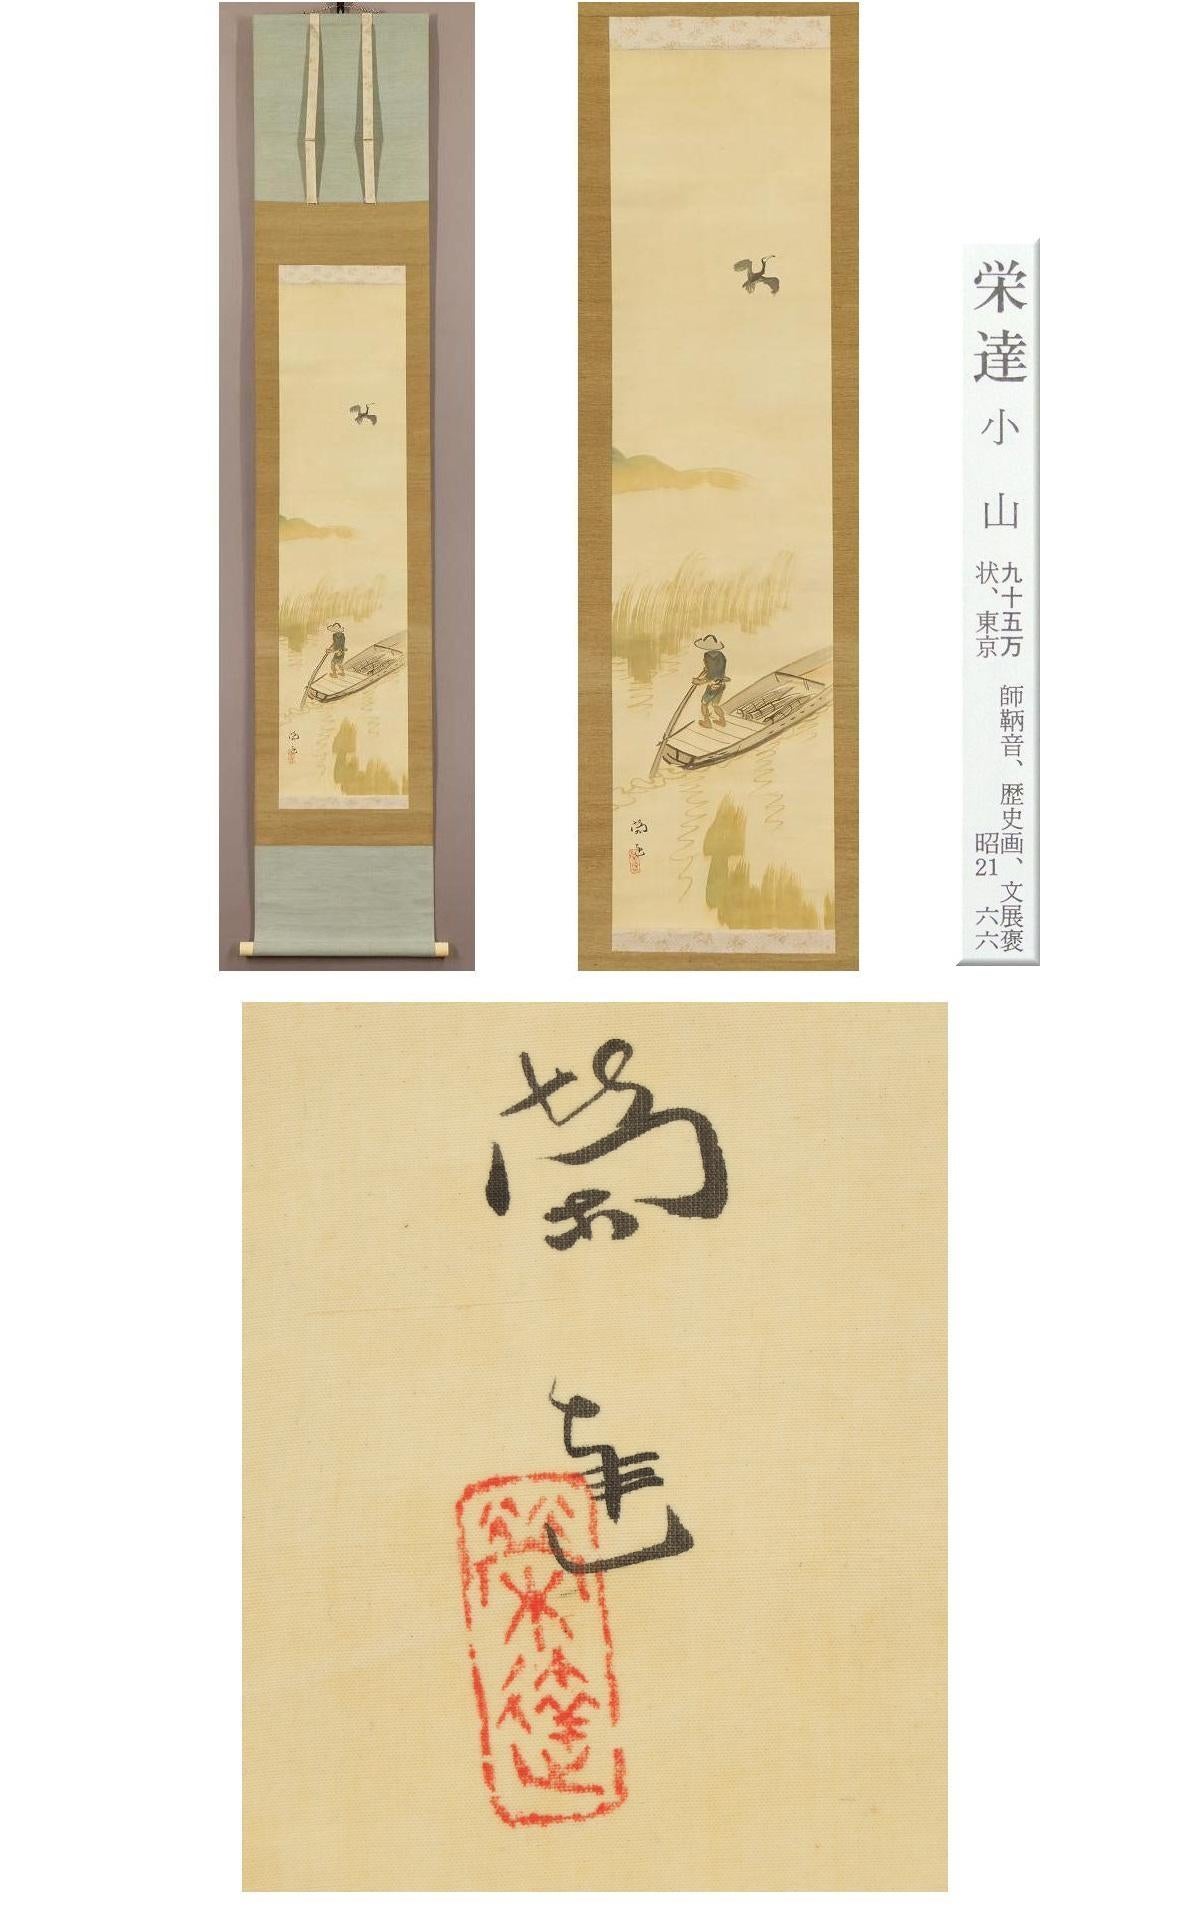 [Œuvre authentique] ◆ Eitatsu Koyama ◆ Dessin au cutter ◆ Peinture japonaise ◆ Peint à la main ◆ Livre en soie ◆ Rouleau à suspendre ◆ 

Eitatsu Koyama
1880 (Meiji 13) - 1945 (Showa 20)
[Valeur estimée de l'annuaire artistique : 950 000 yens ]
[Lieu